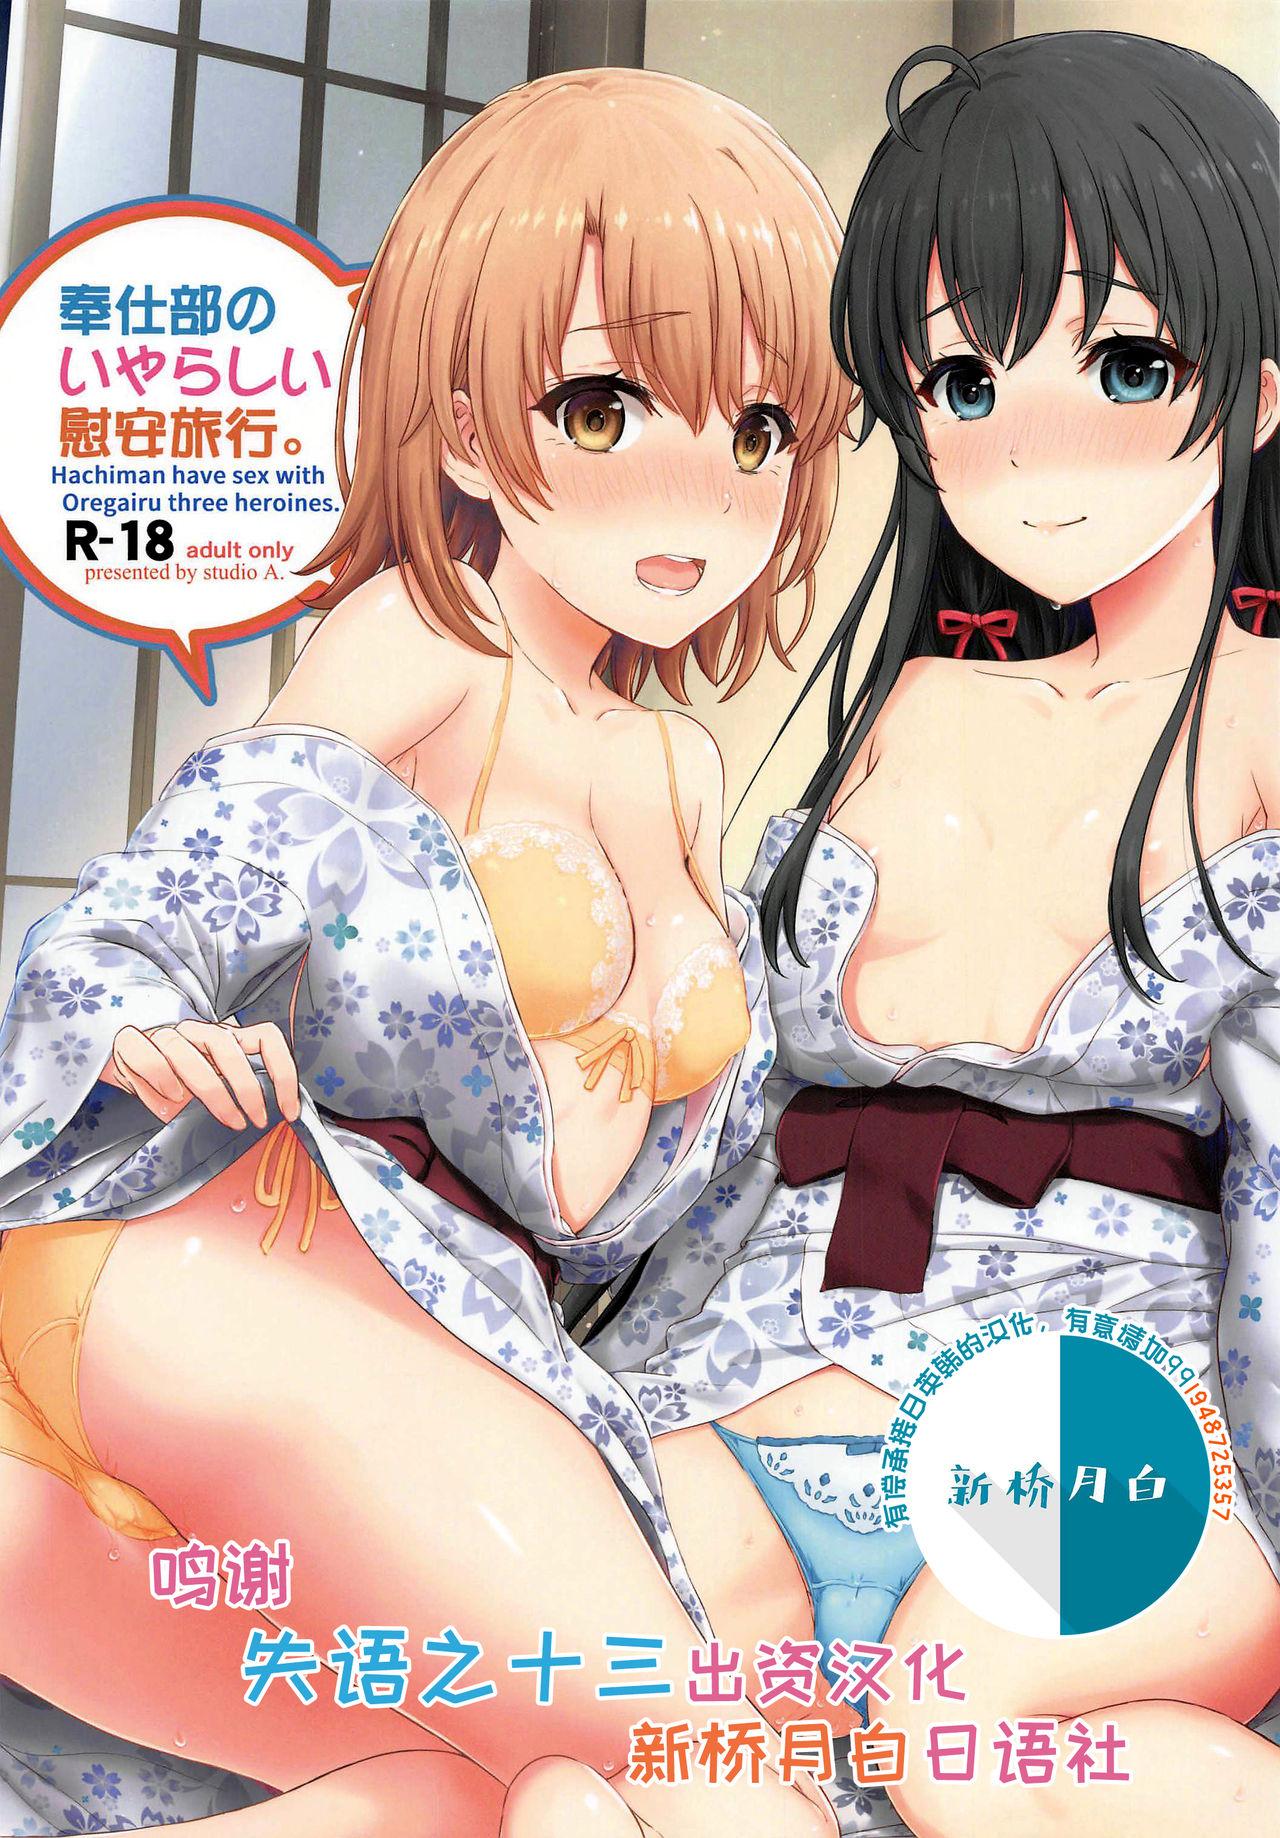 Blow Jobs Porn Houshi-bu no Iyarashii Ian Ryokou. - Yahari ore no seishun love come wa machigatteiru Nipples - Picture 1